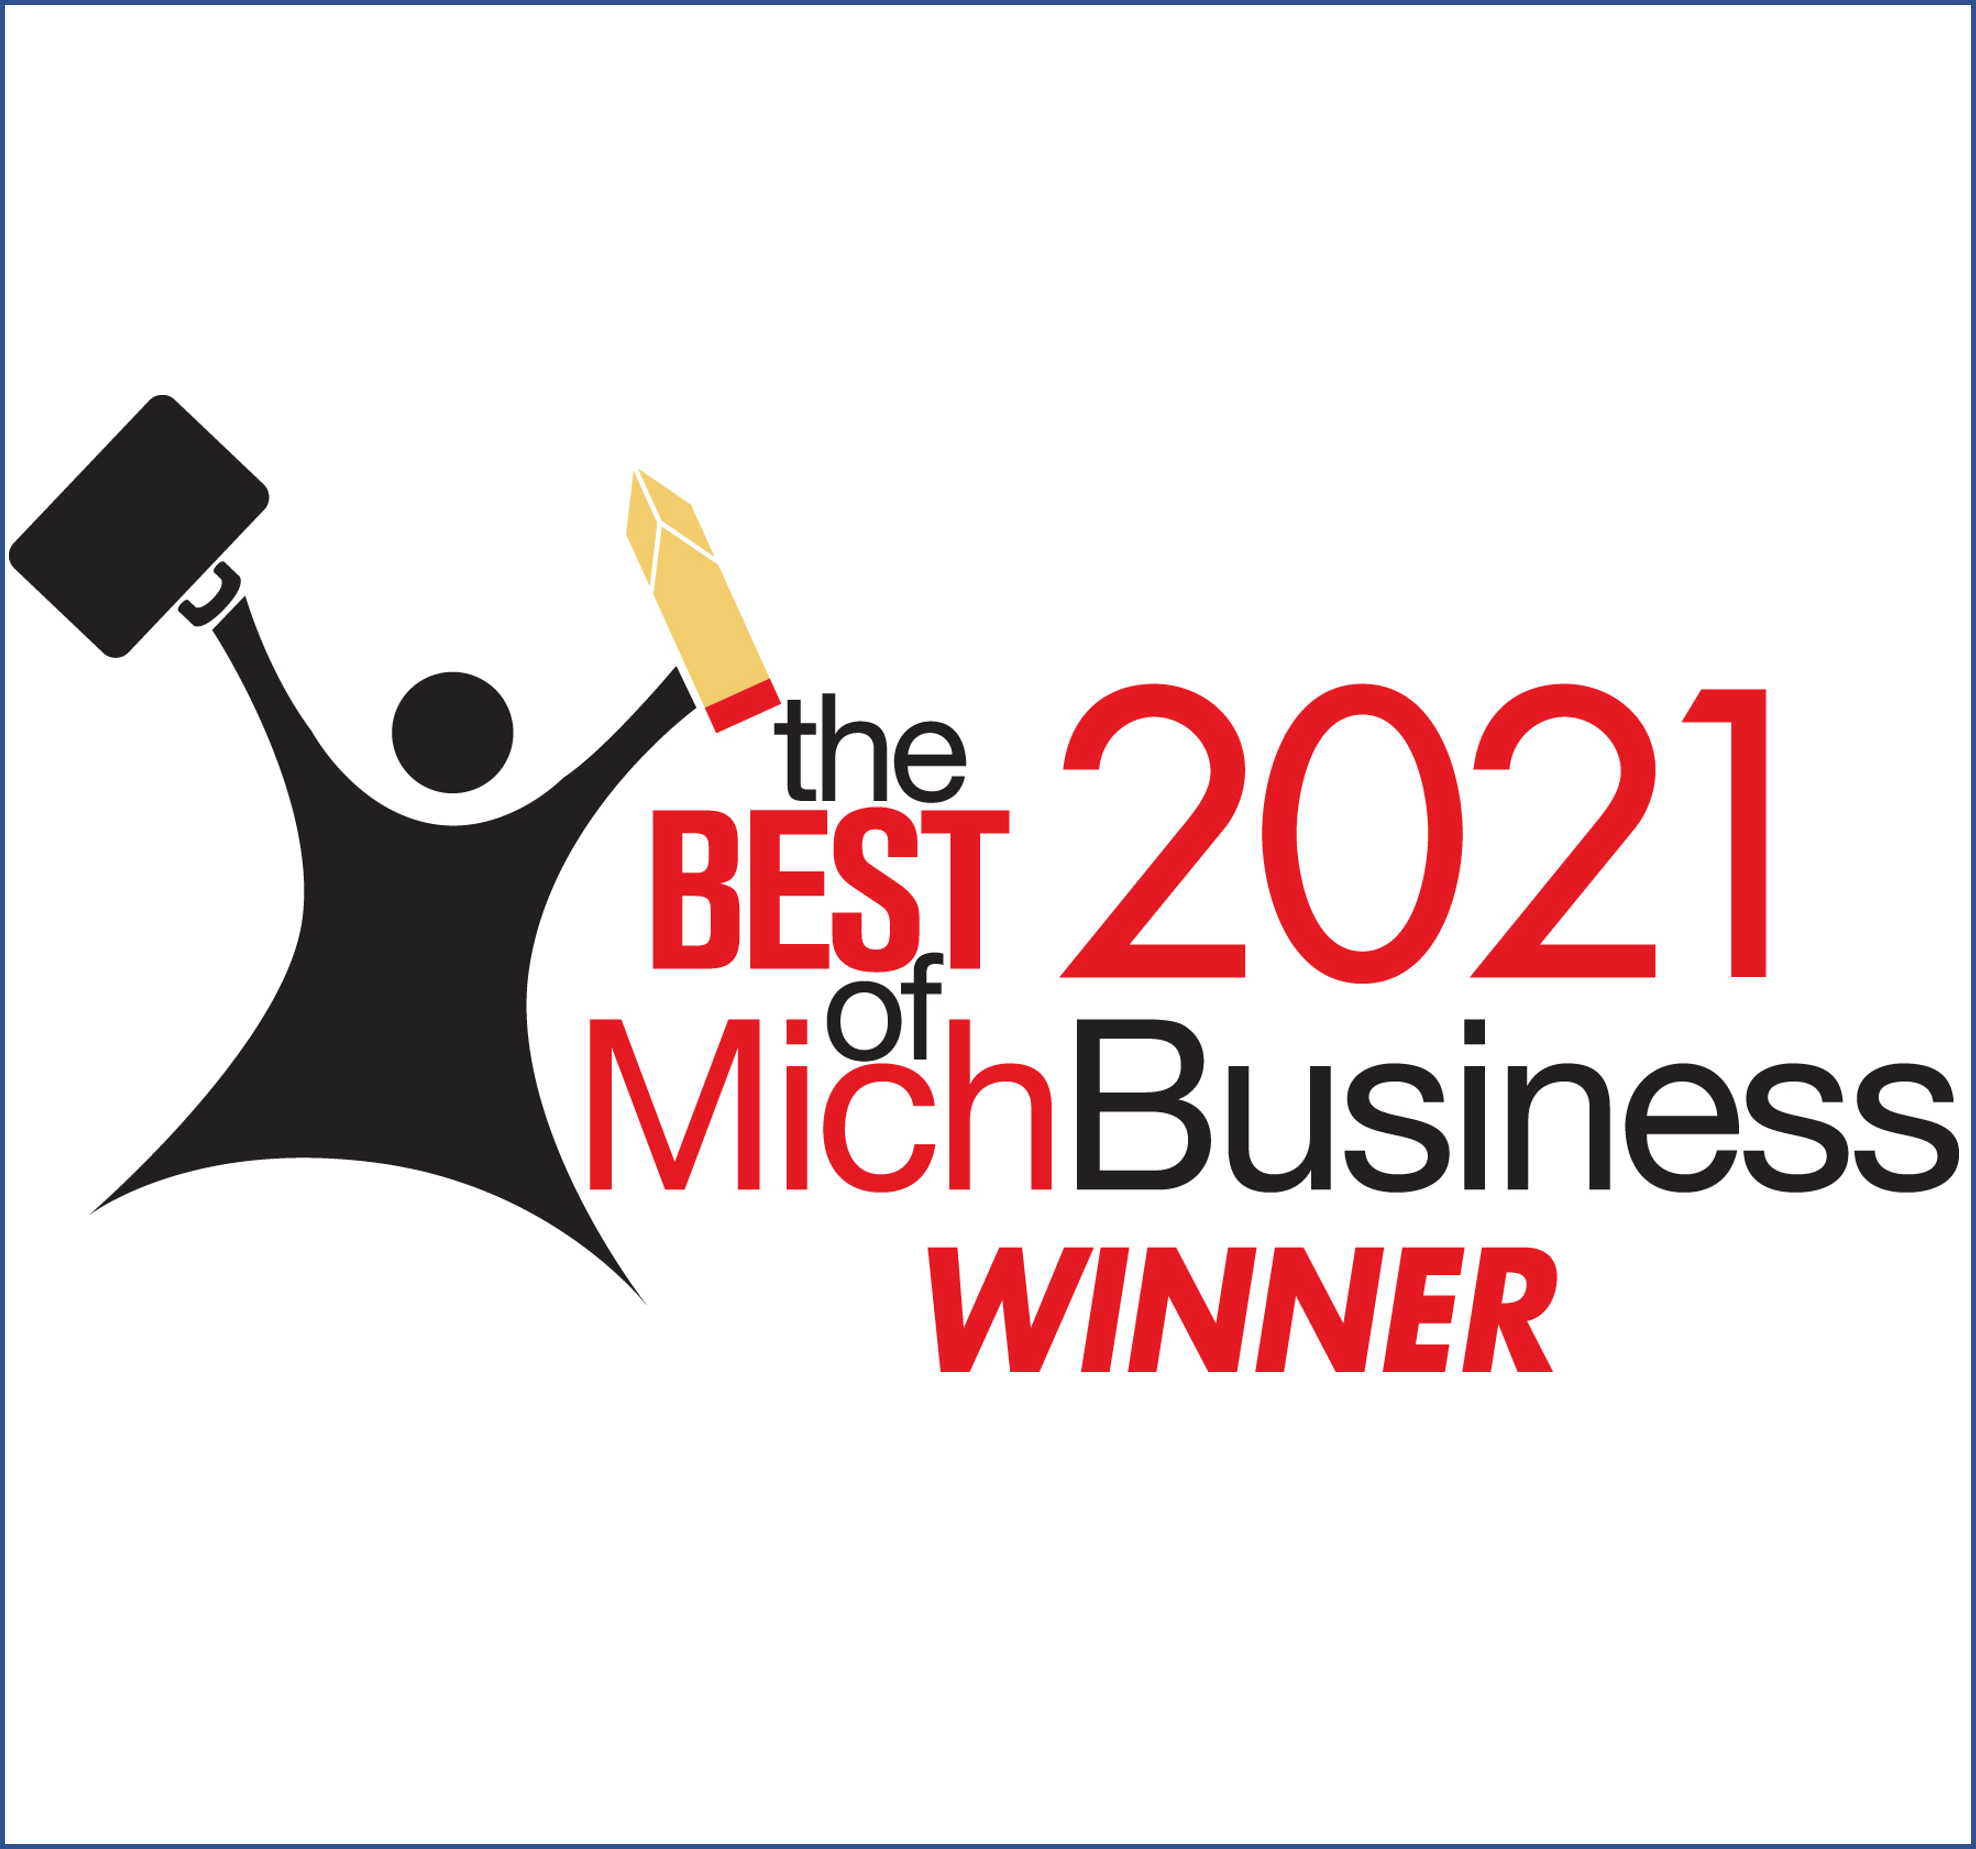 Logótipo para vencedor do prémio MichBusiness 2021.